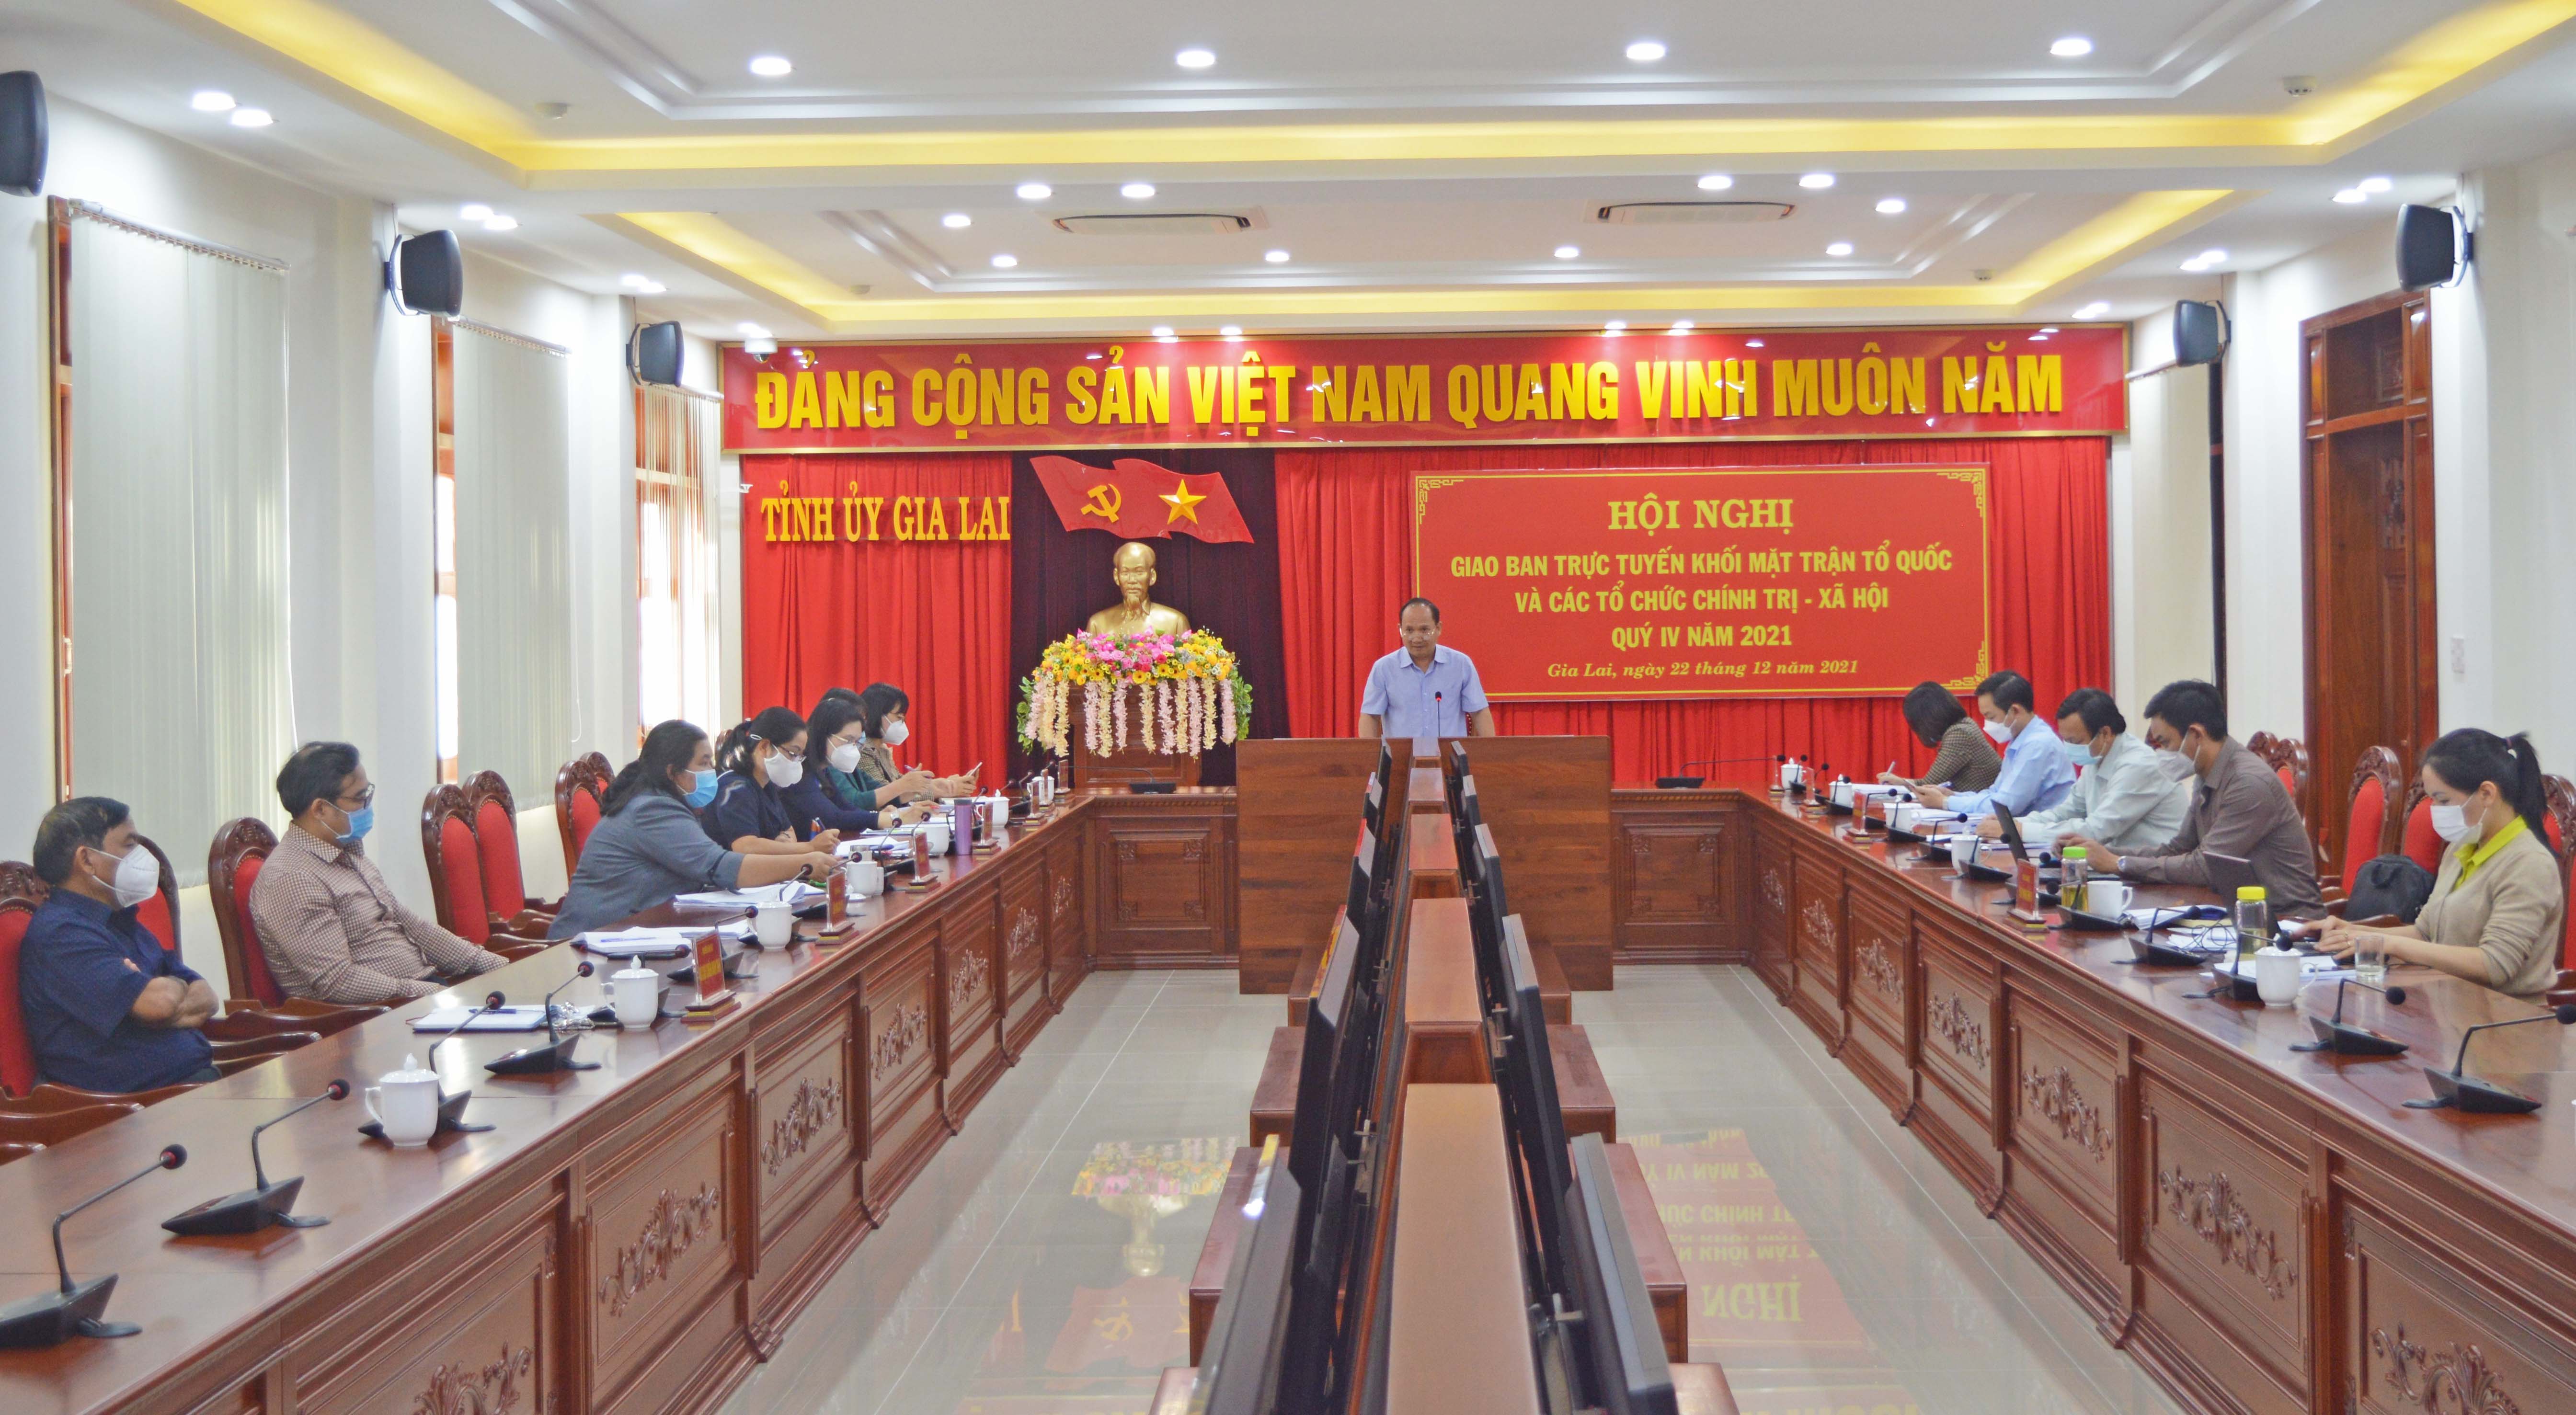 Phó Bí thư Tỉnh ủy Rah Lan Chung: Nâng cao chất lượng phong trào thi đua yêu nước, các cuộc vận động